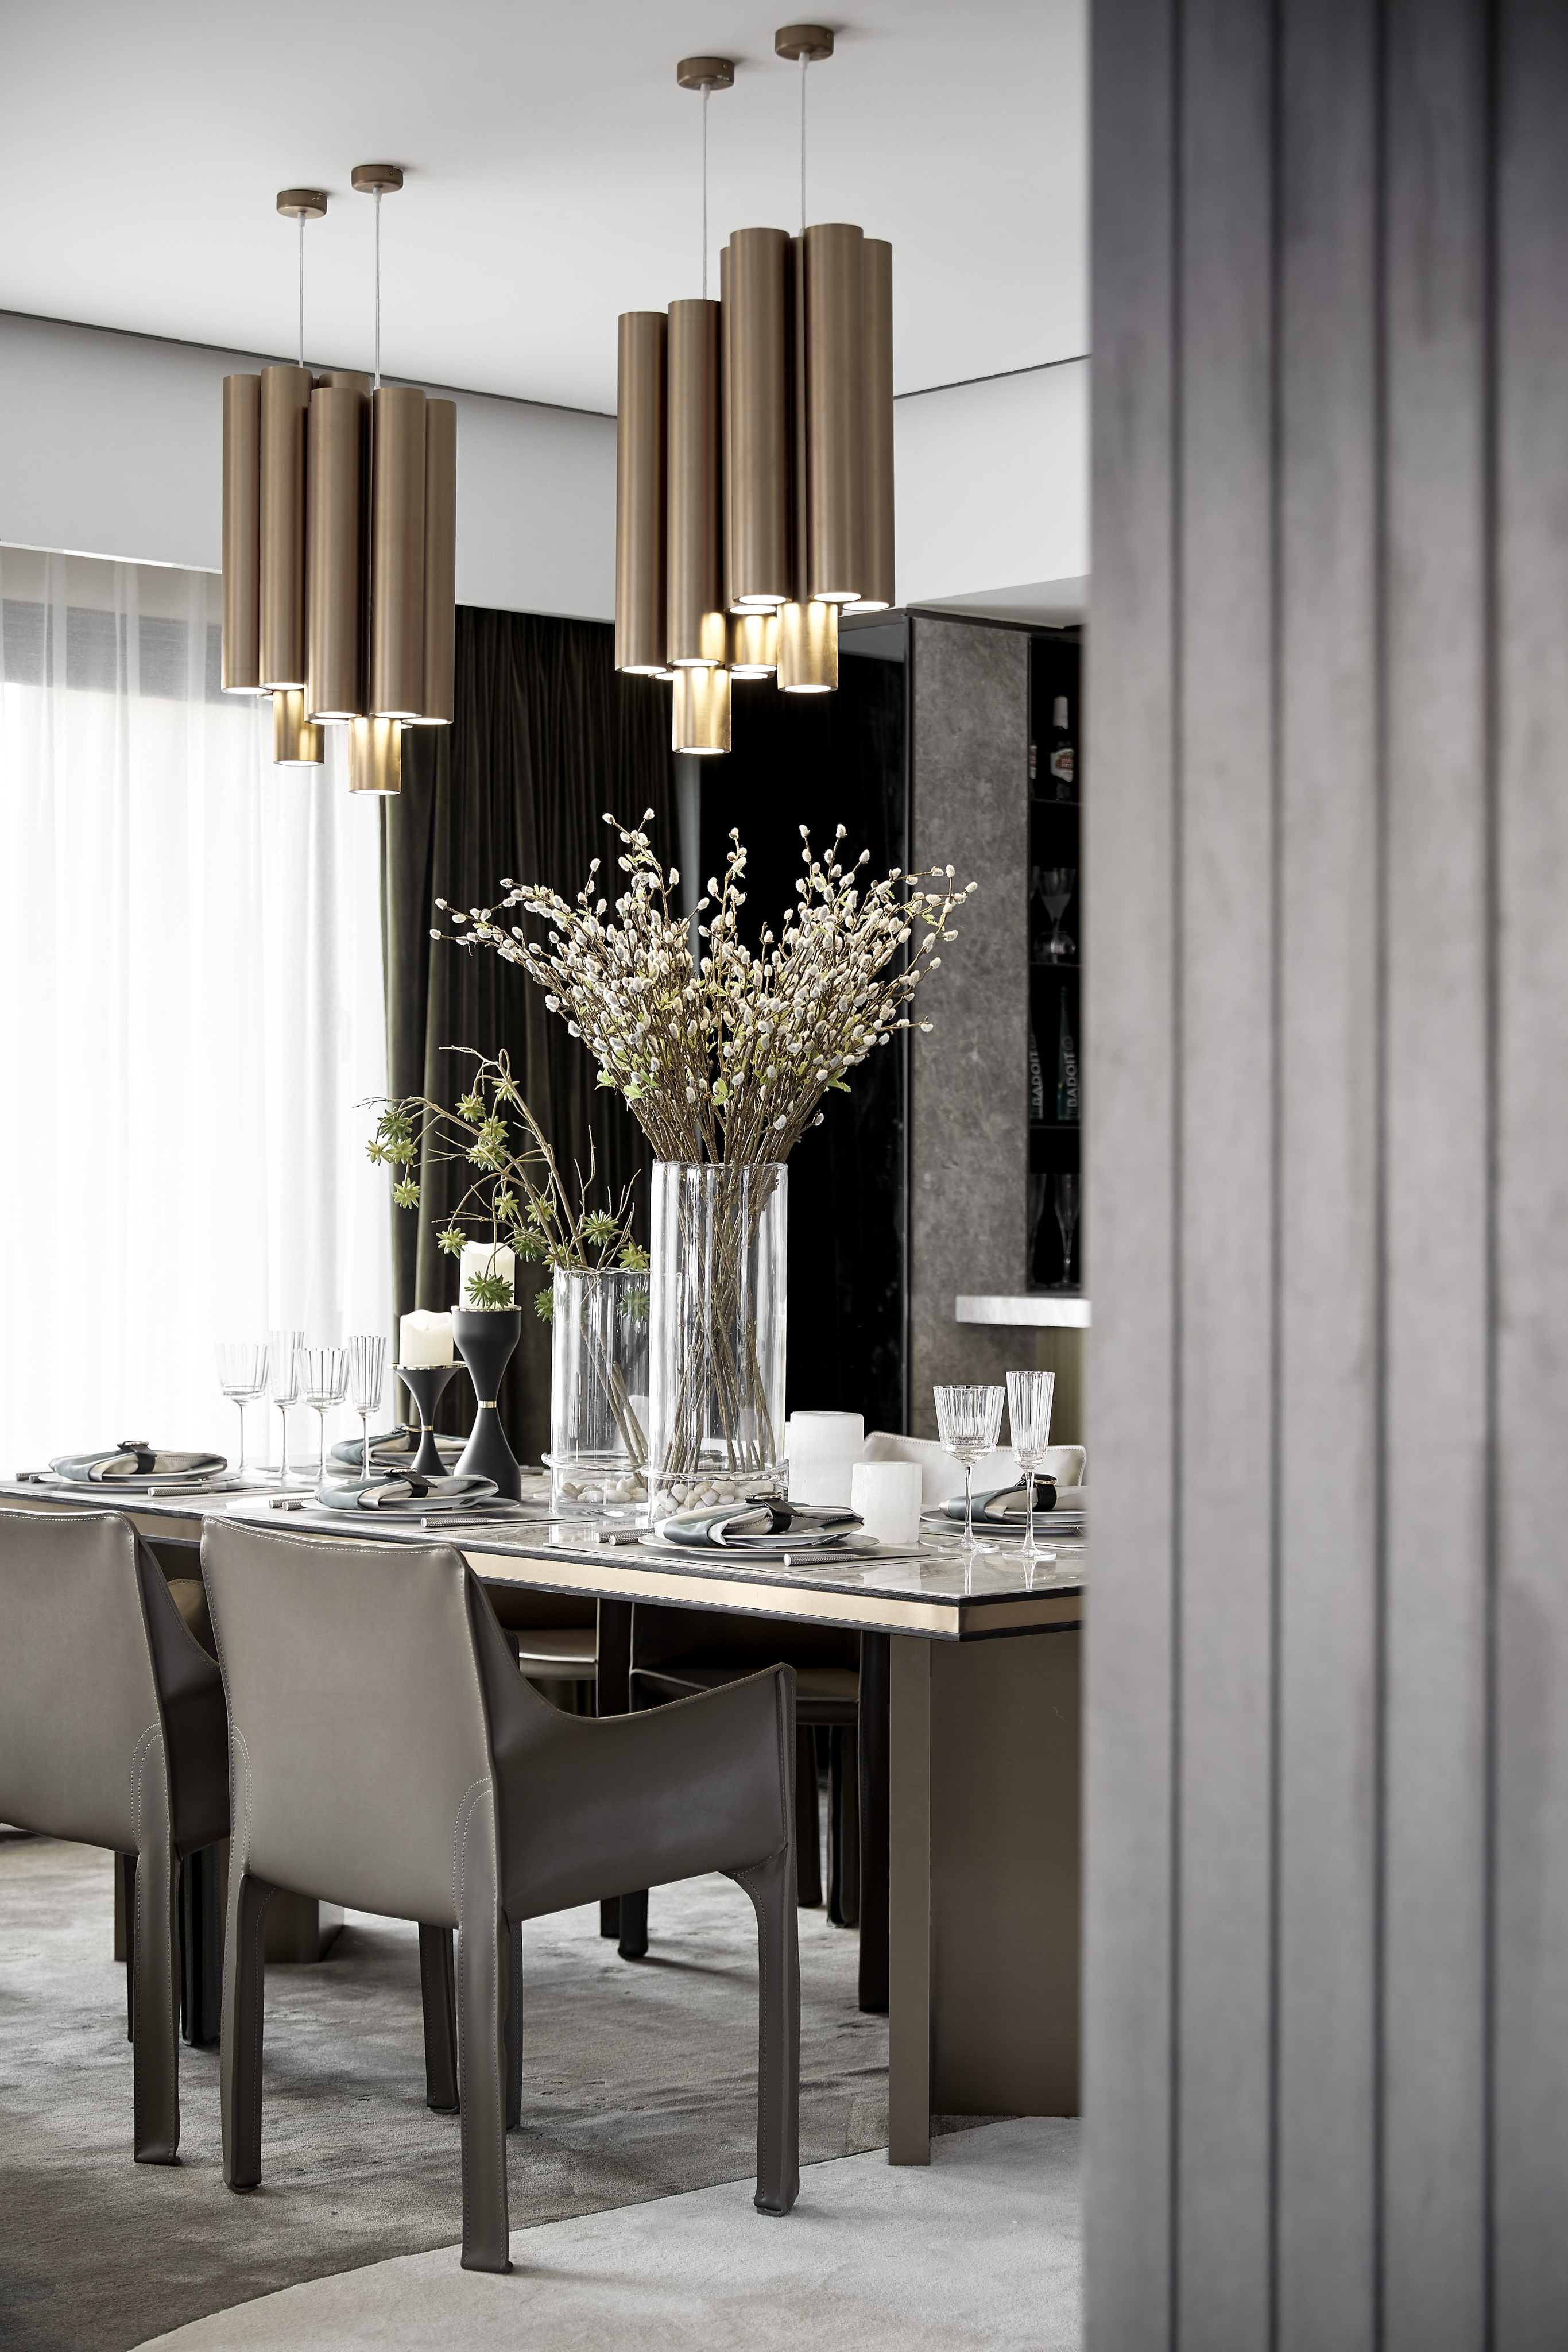 厨房窗帘1装修效果图精美345平现代样板间餐厅效果现代简约餐厅设计图片赏析